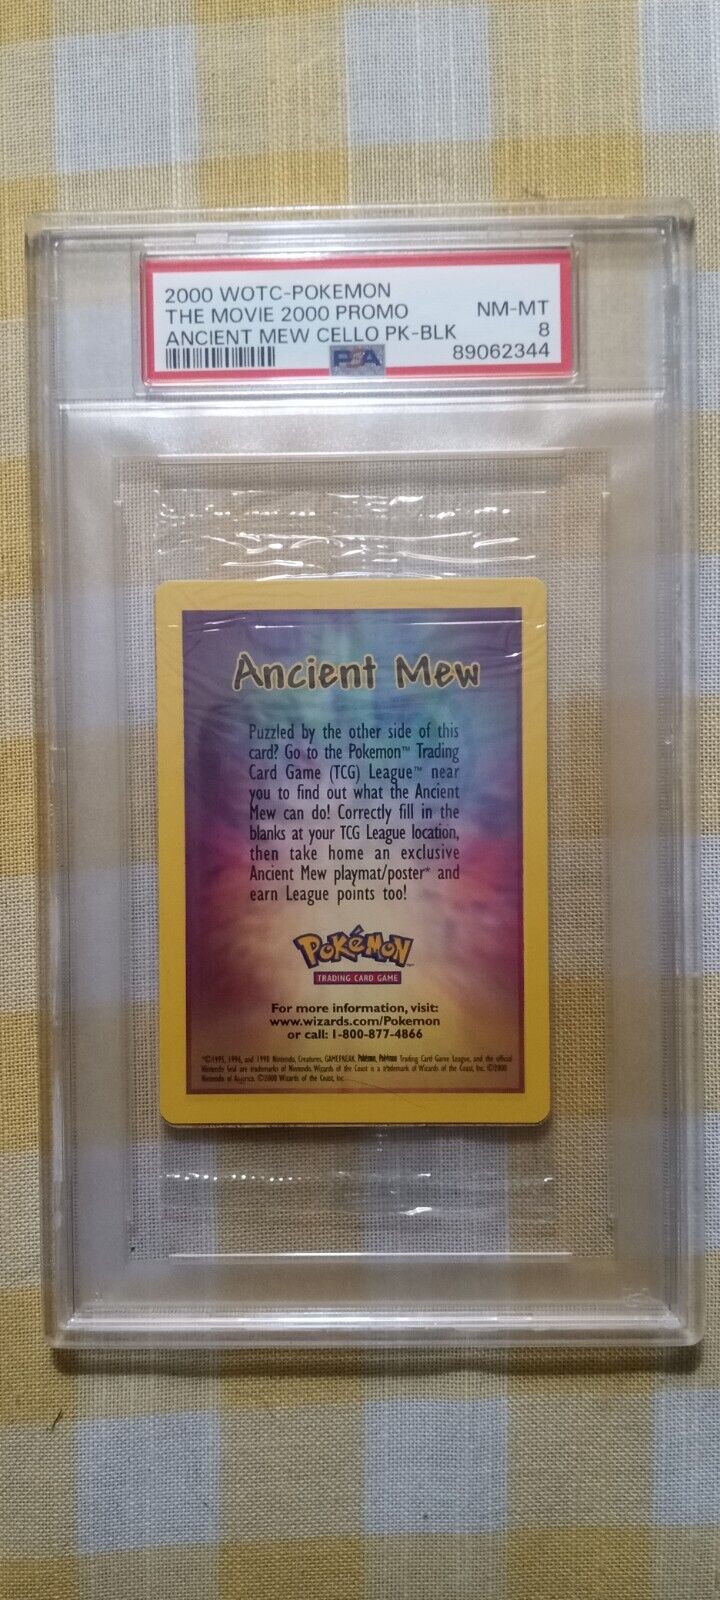 2000 WOTC Pokemon Movie Game Promo / Ancient Mew CELLO Pack - BLK / PSA 8